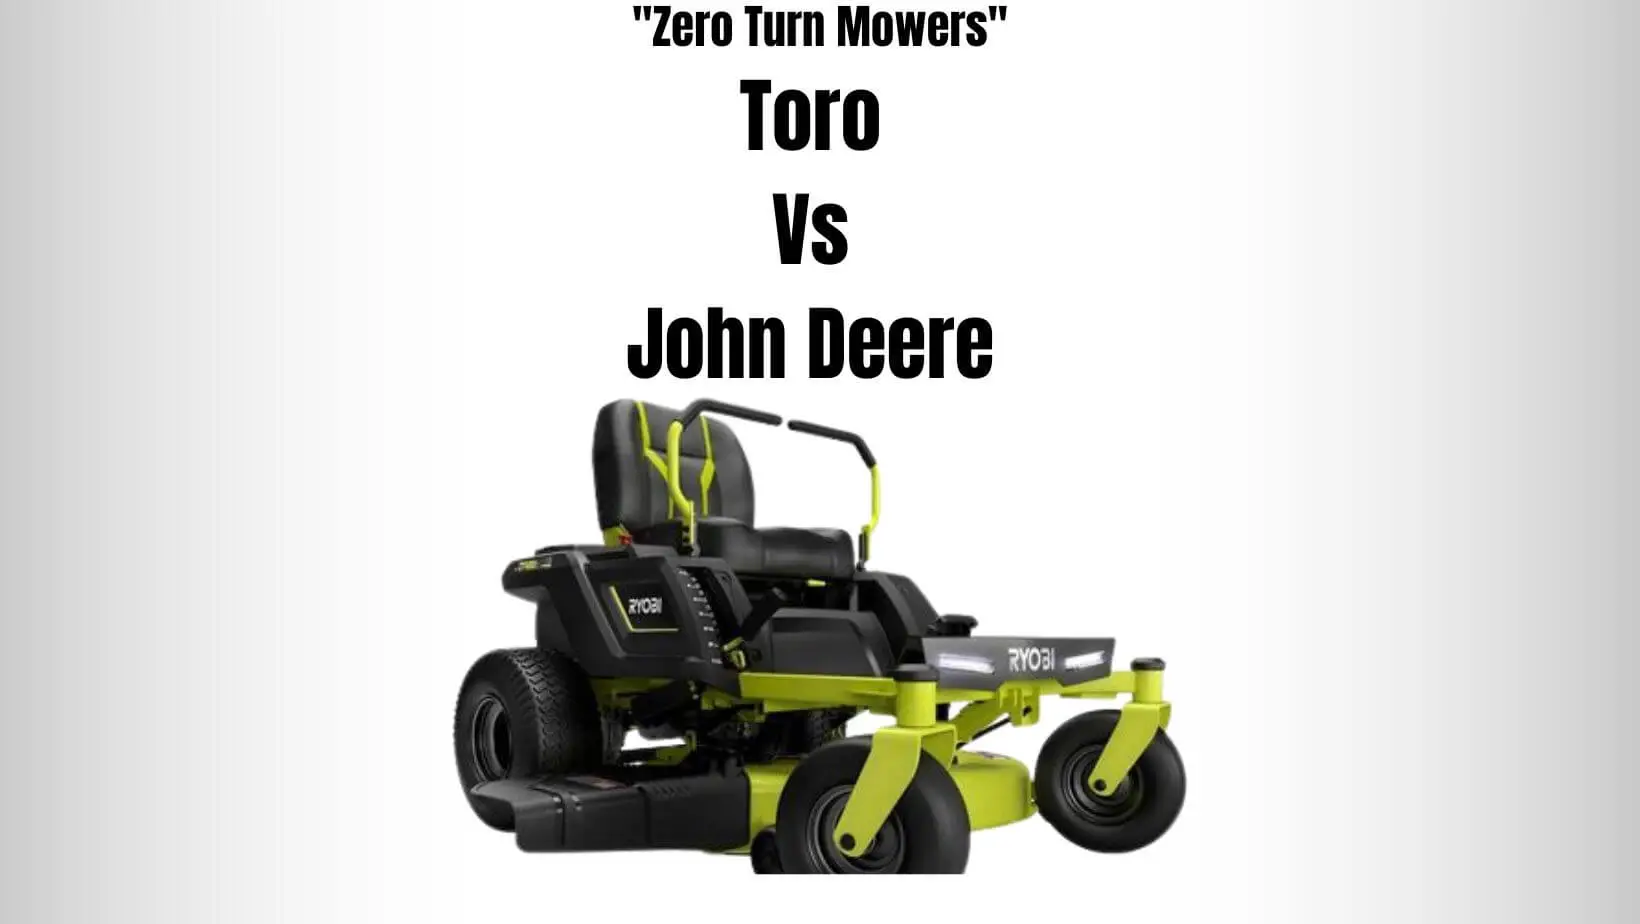 Toro Vs John Deere Zero Turn Mowers